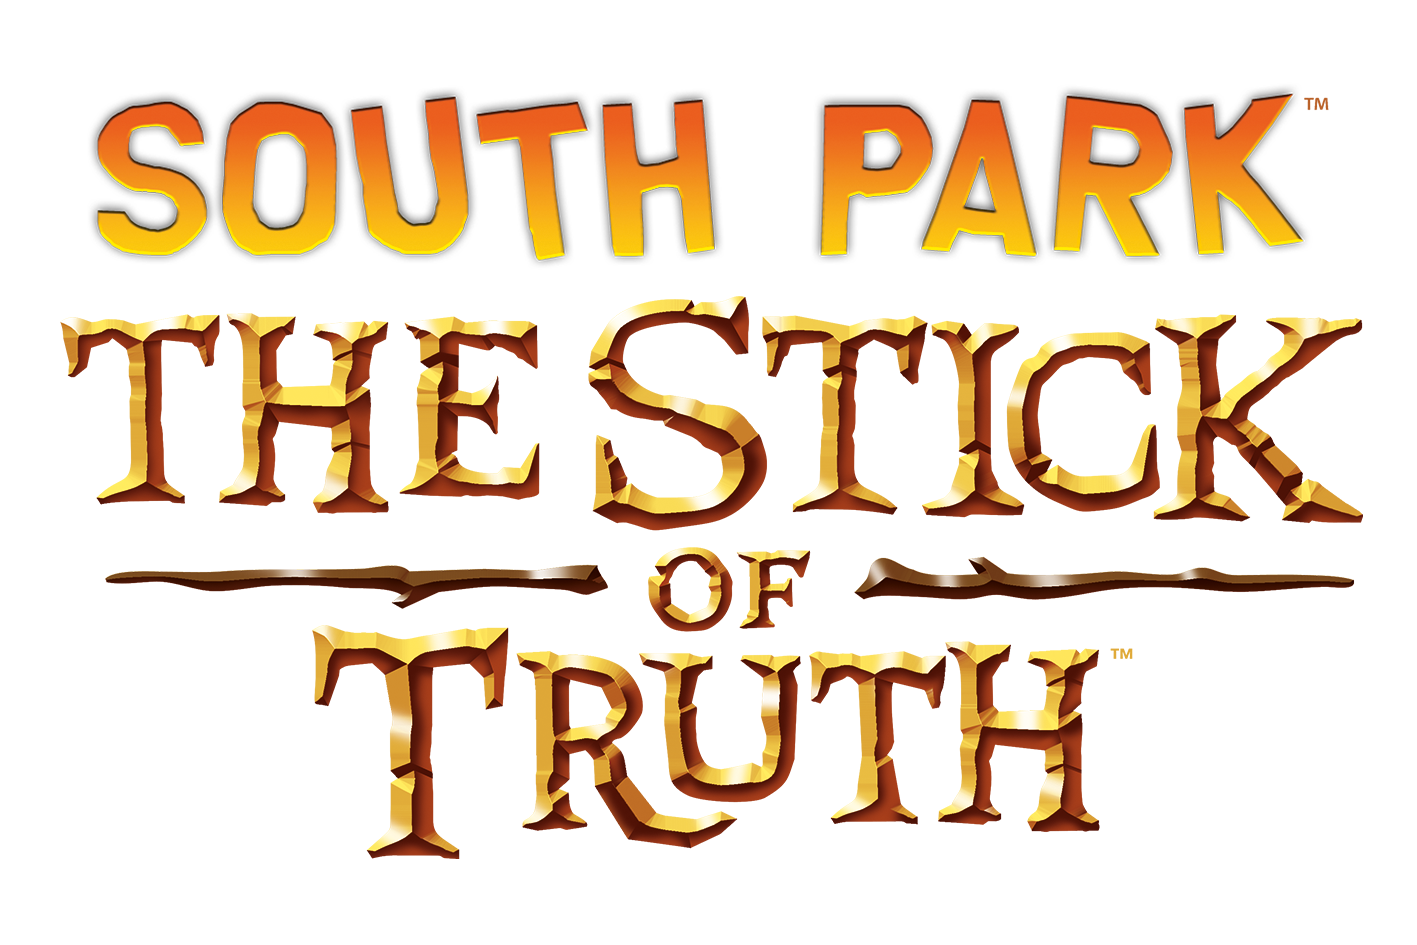 South park the stick of truth скрытые достижения в стим фото 103